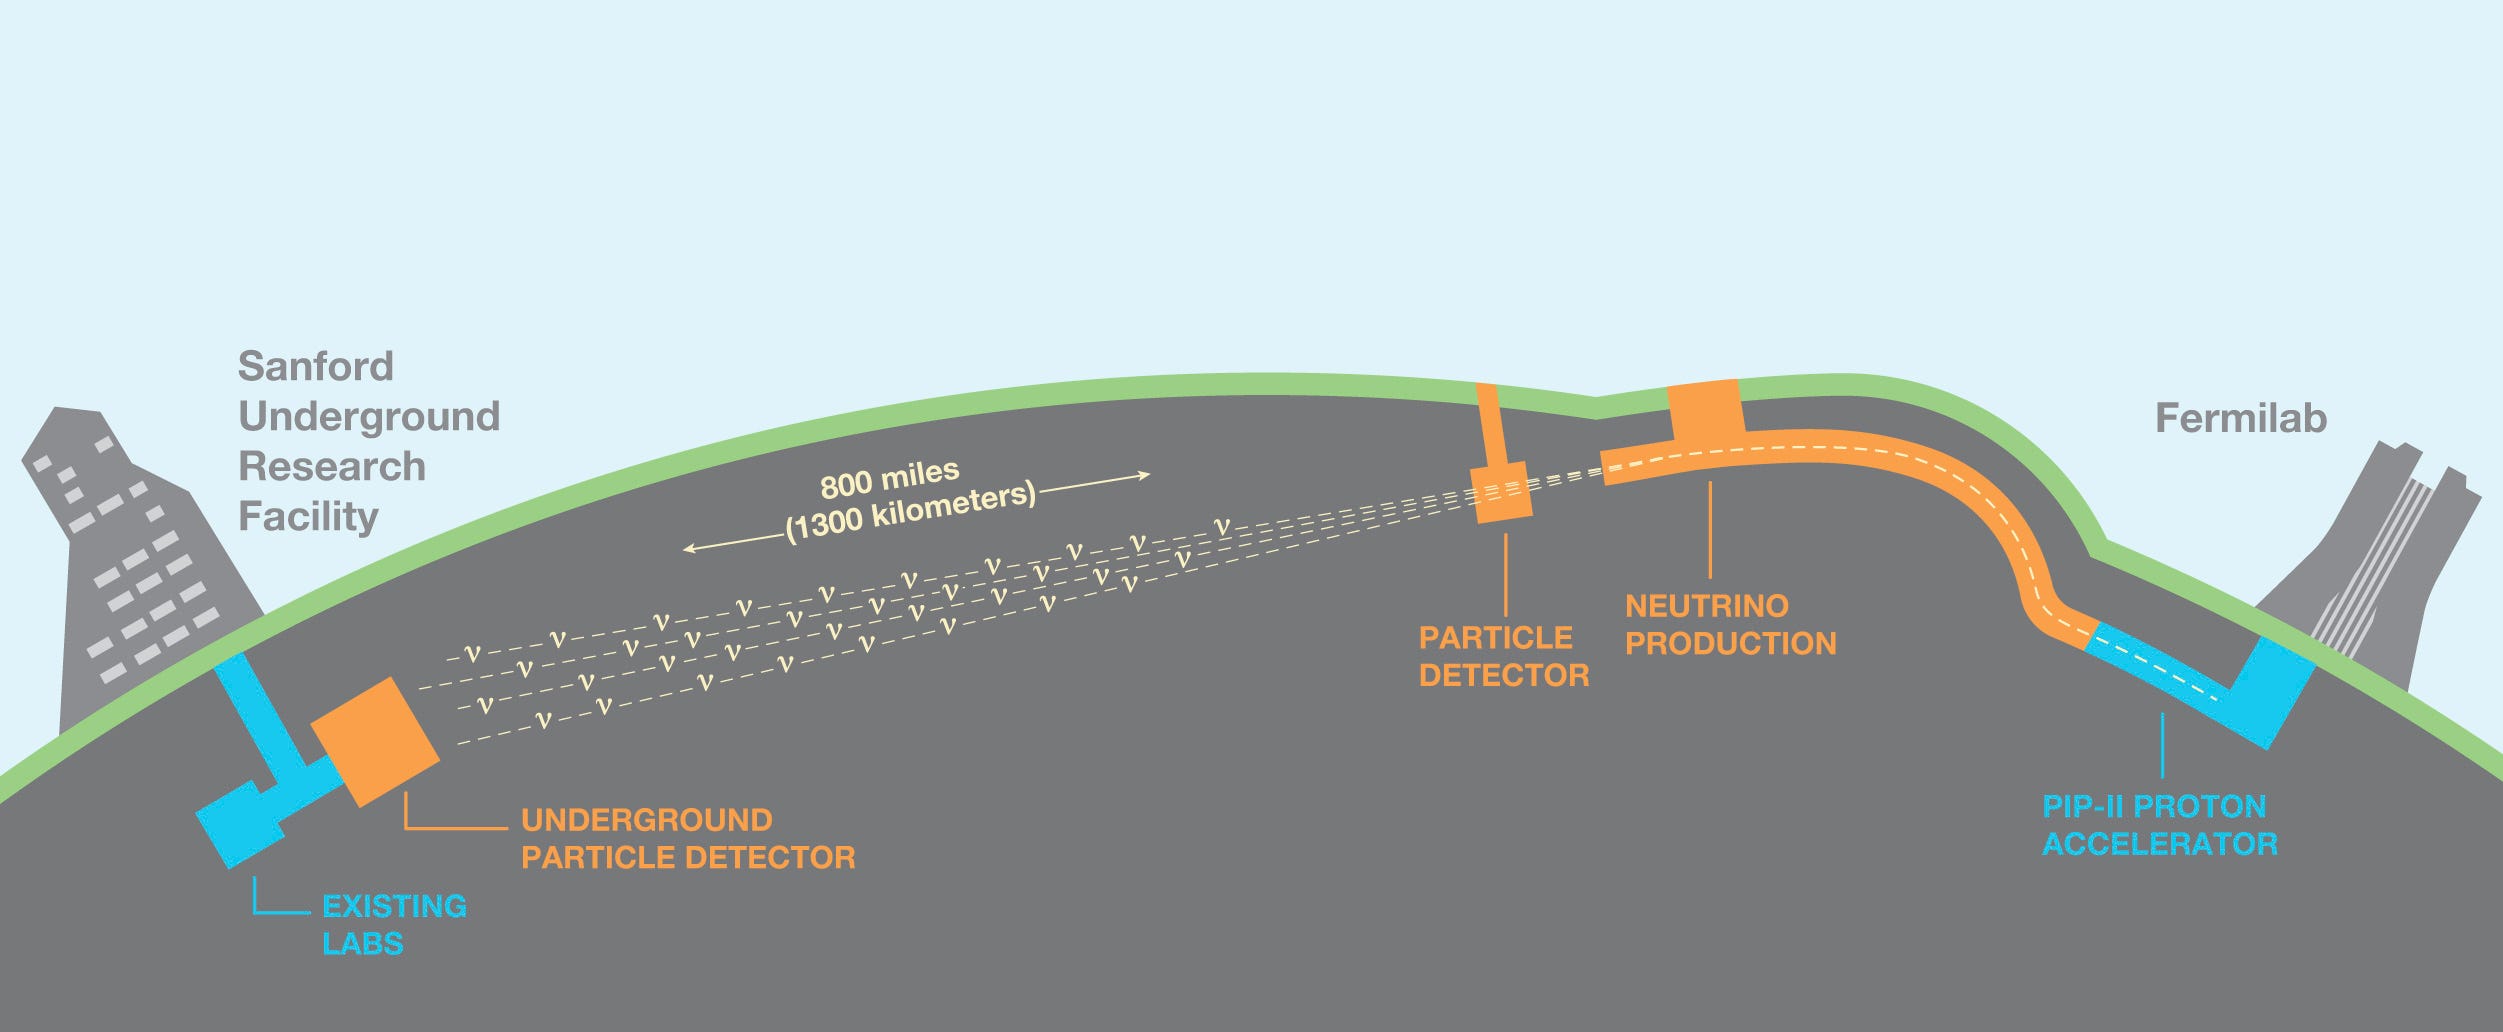 Eine Grafik, die den Weg des Neutrinostrahls vom Fermilab zur Sanford Underground Research Facility zeigt